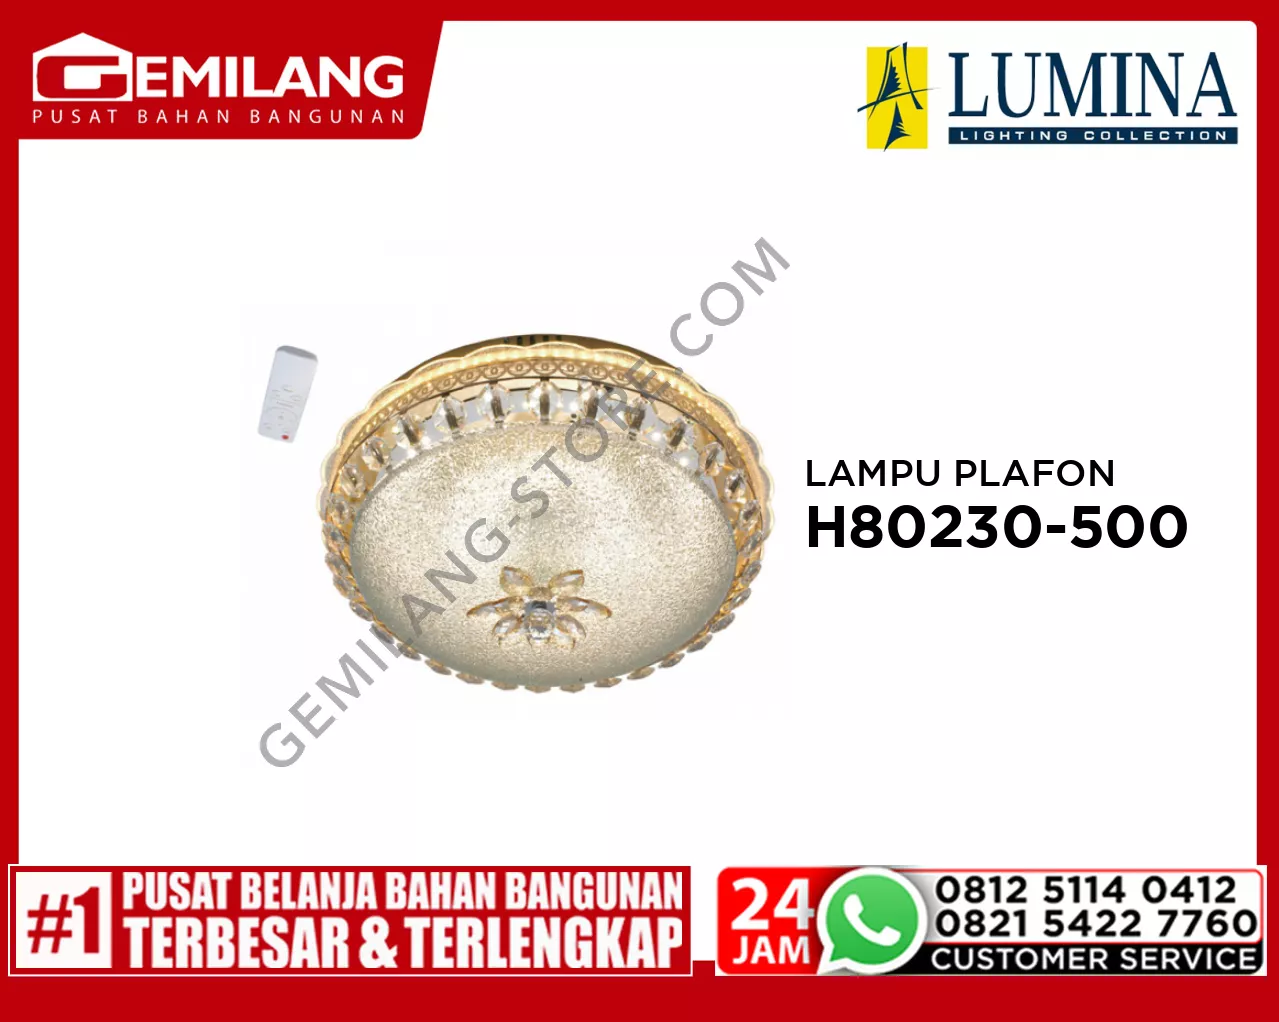 LAMPU PLAFON H 80230-500 GD